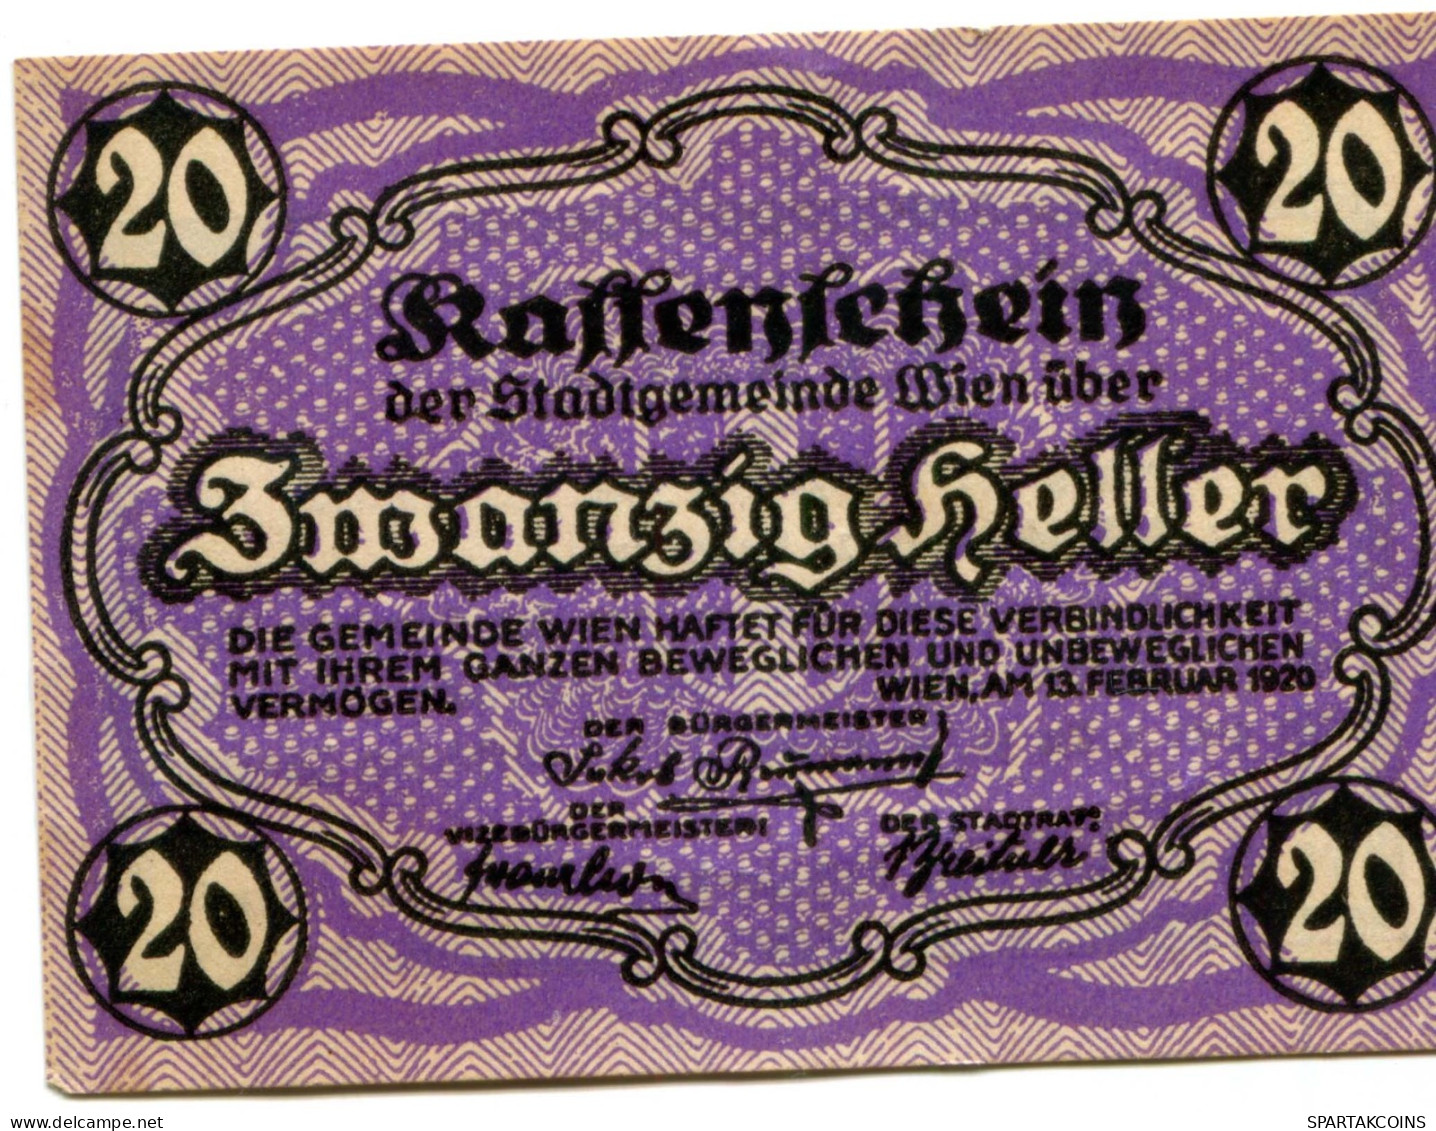 20 HELLER 1920 Stadt Wien Österreich Notgeld Papiergeld Banknote #PL556 - [11] Local Banknote Issues